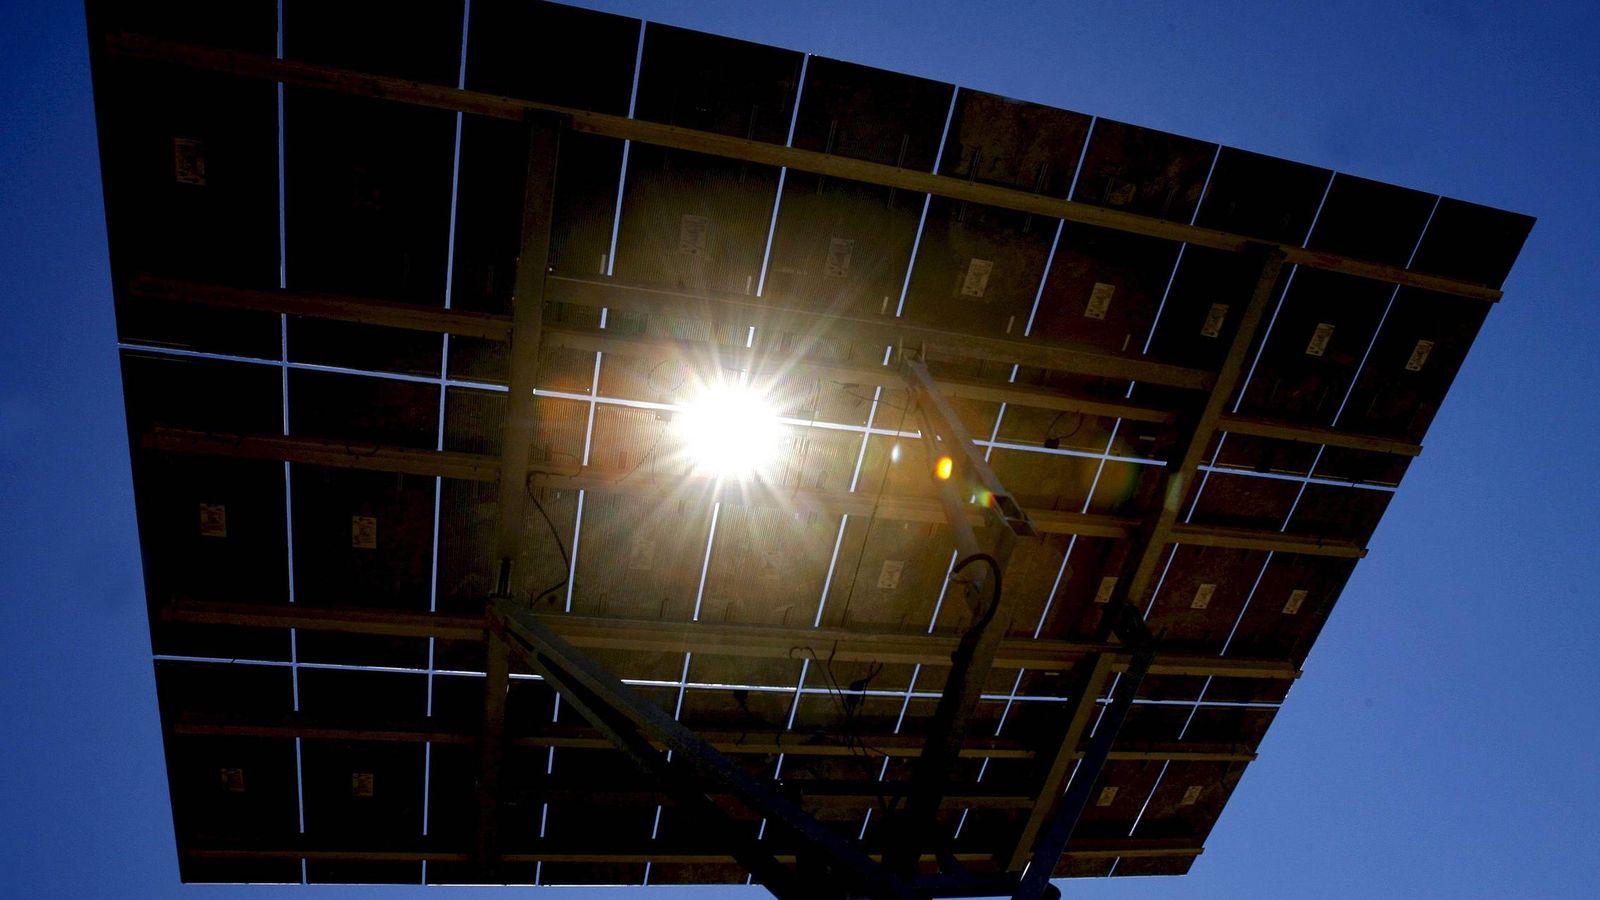 Foto: Detalle de uno de los módulos de la instalación fotovoltaica con seguidores solares mayor del mundo.